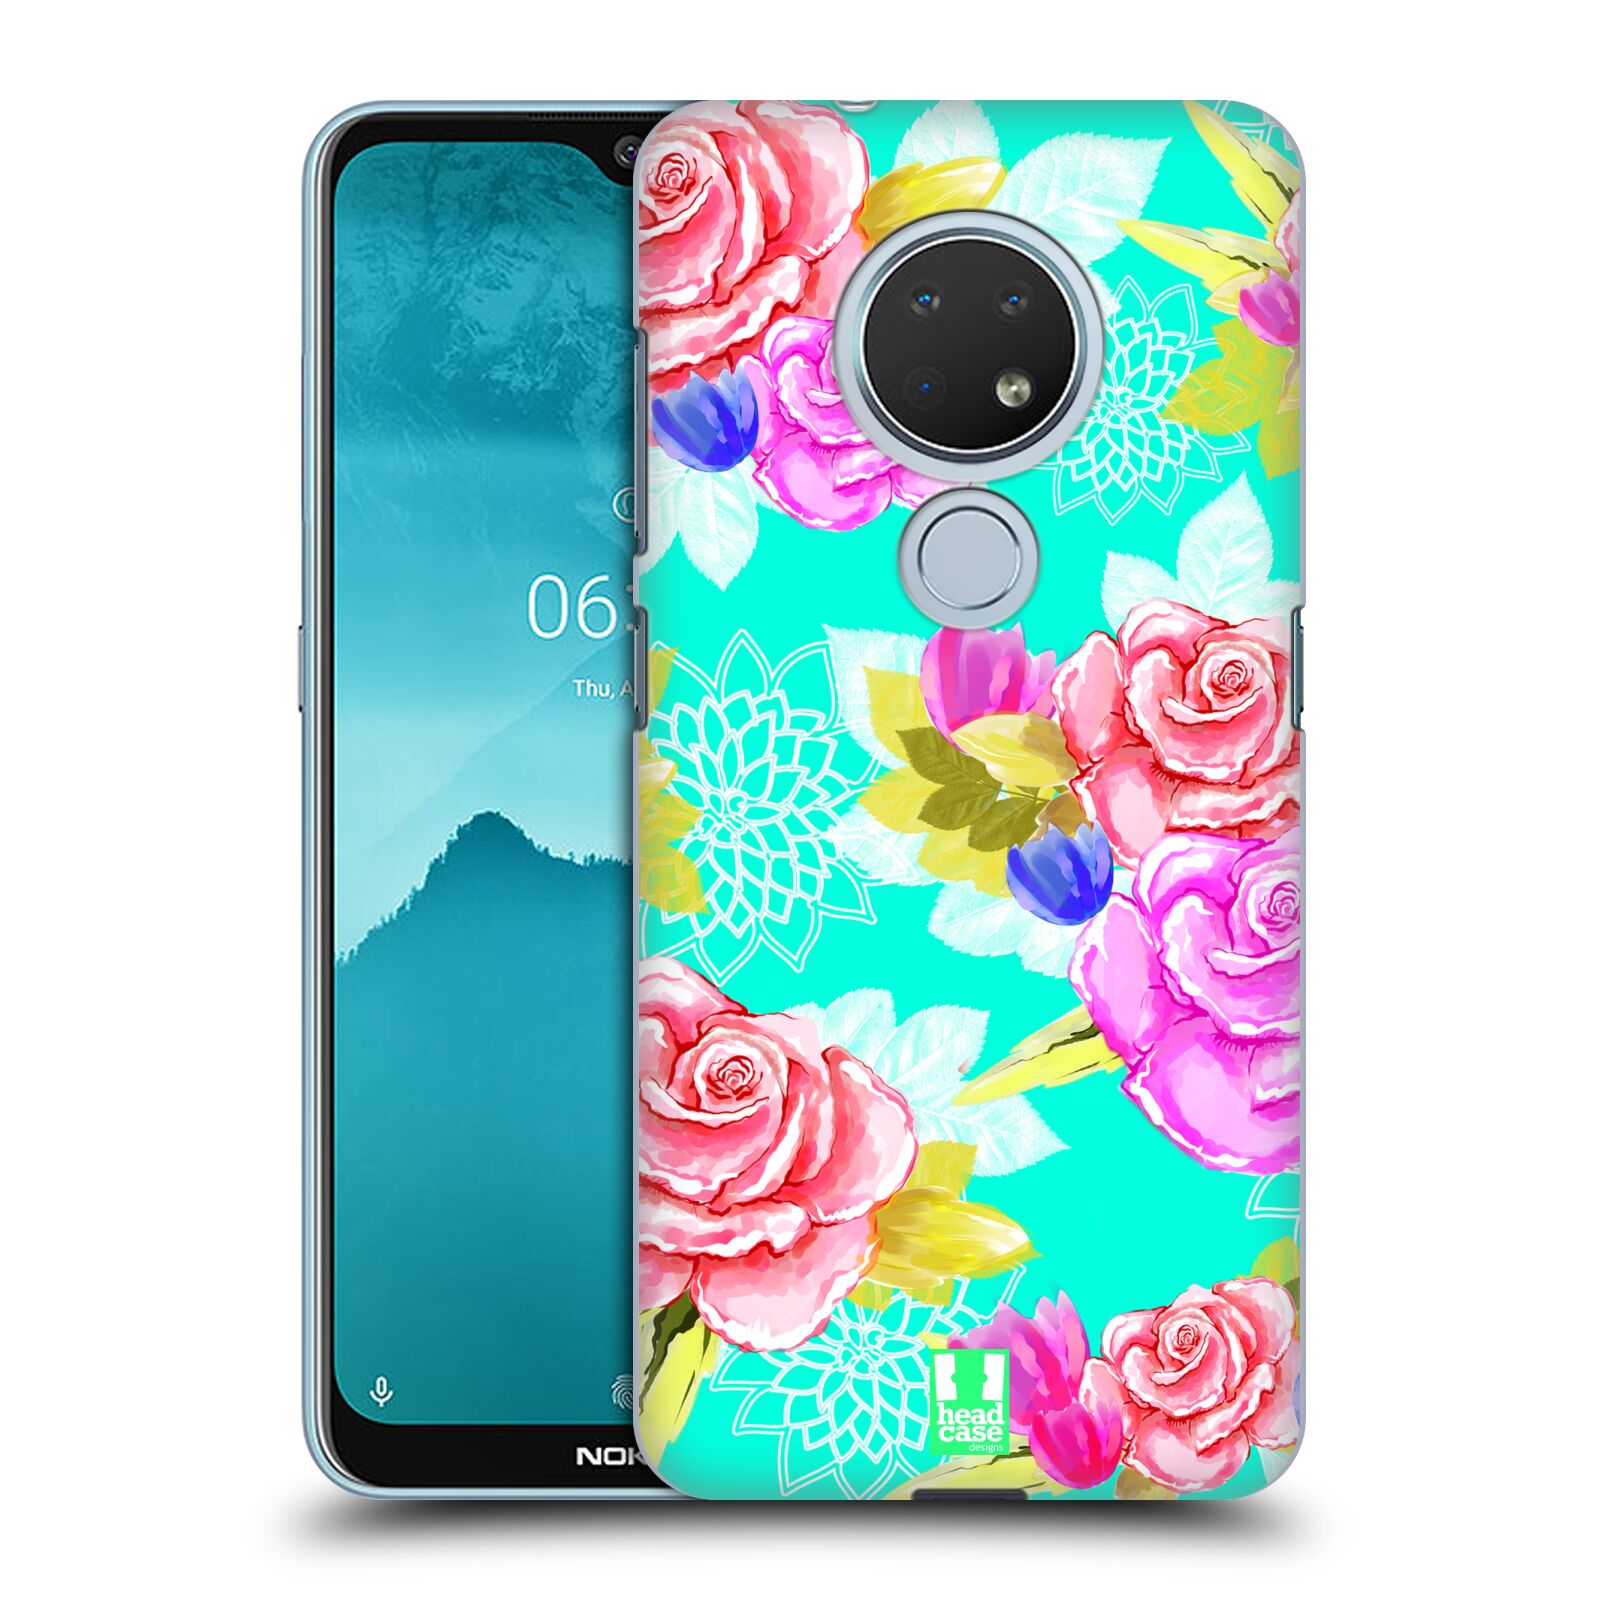 Pouzdro na mobil Nokia 6.2 - HEAD CASE - vzor Malované květiny barevné AQUA MODRÁ